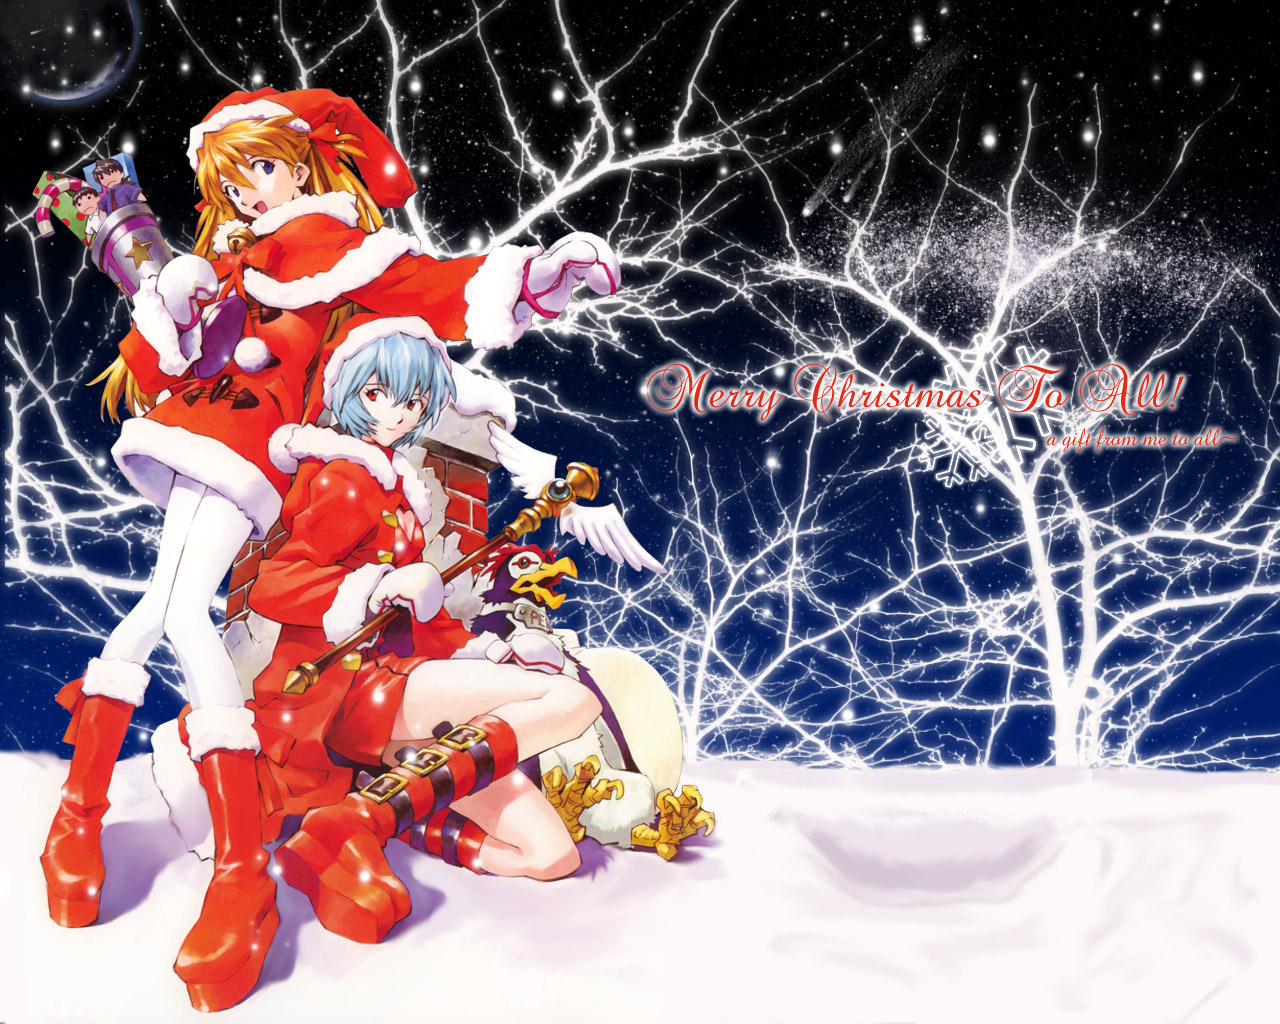 Descarga gratuita de fondo de pantalla para móvil de Animado, Neon Genesis Evangelion, Asuka Langley Sohryu, Rei Ayanami.